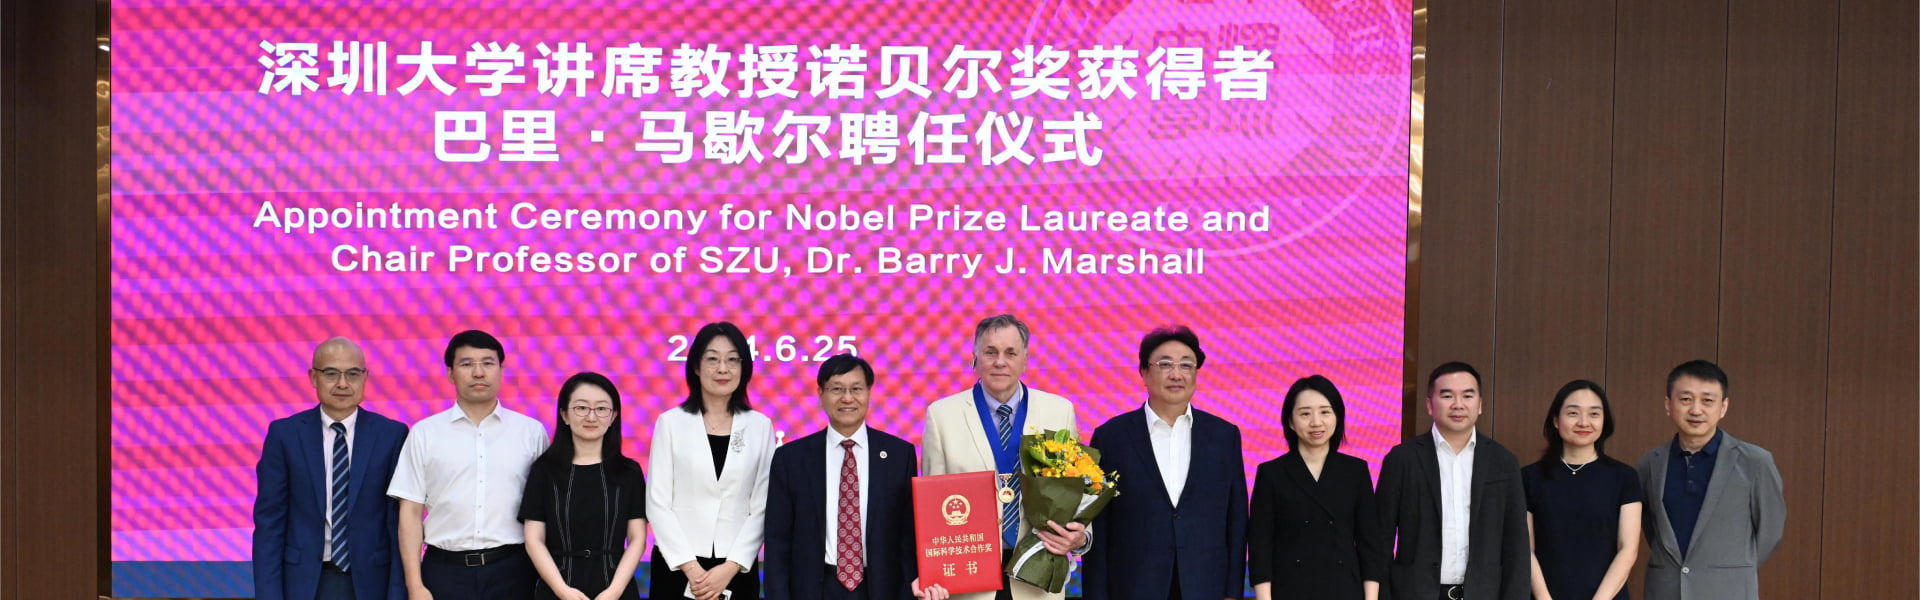 深圳大学讲席教授诺贝尔奖获得者巴里马歇尔聘任仪式